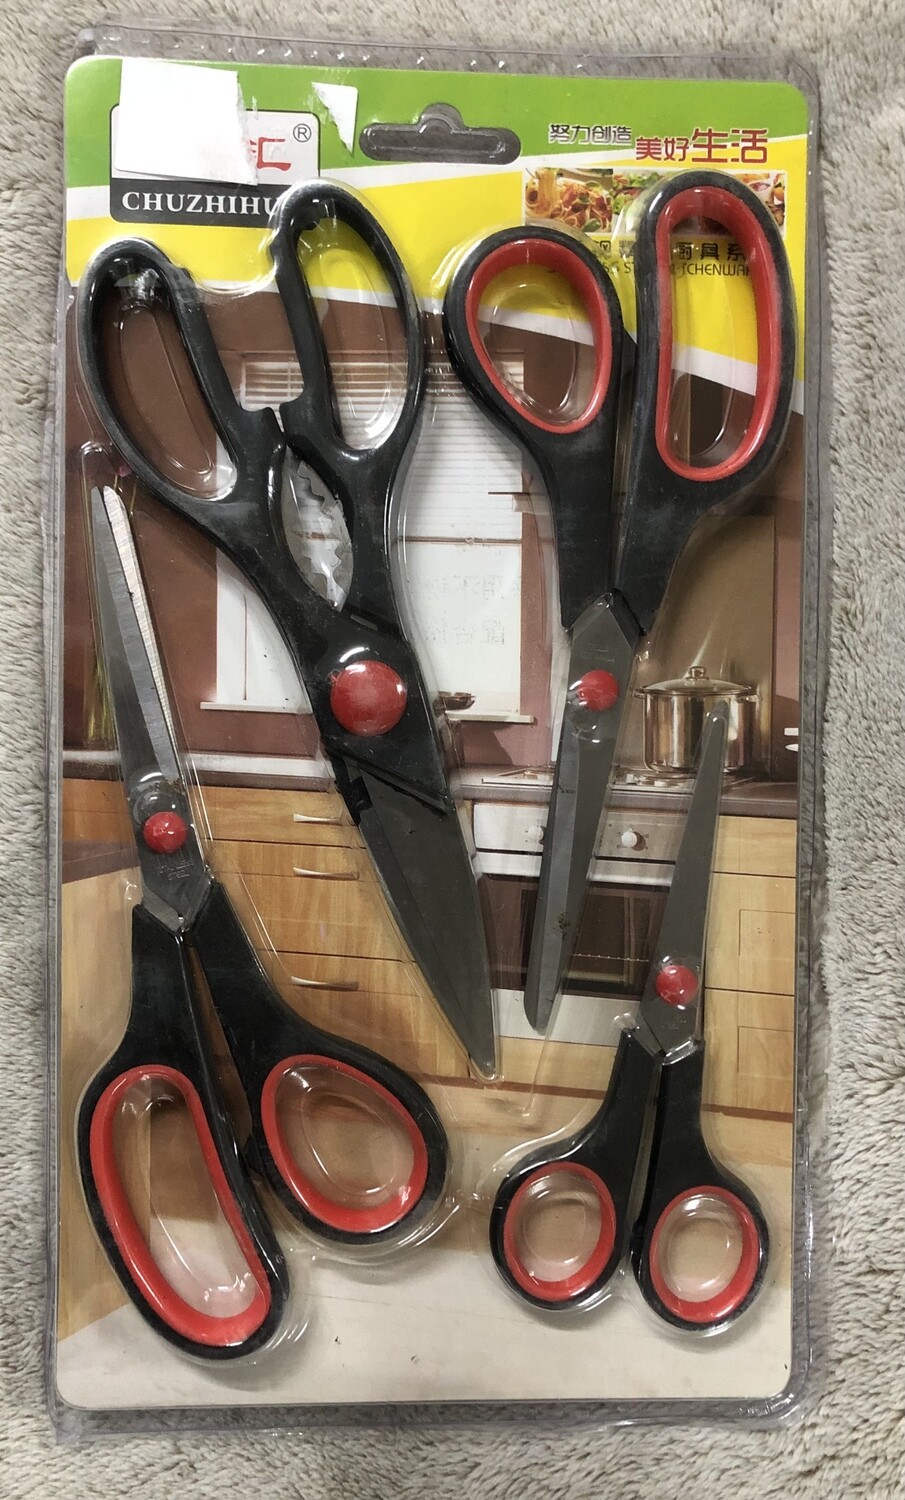 Set of 4 kitchen kitchen scissors.